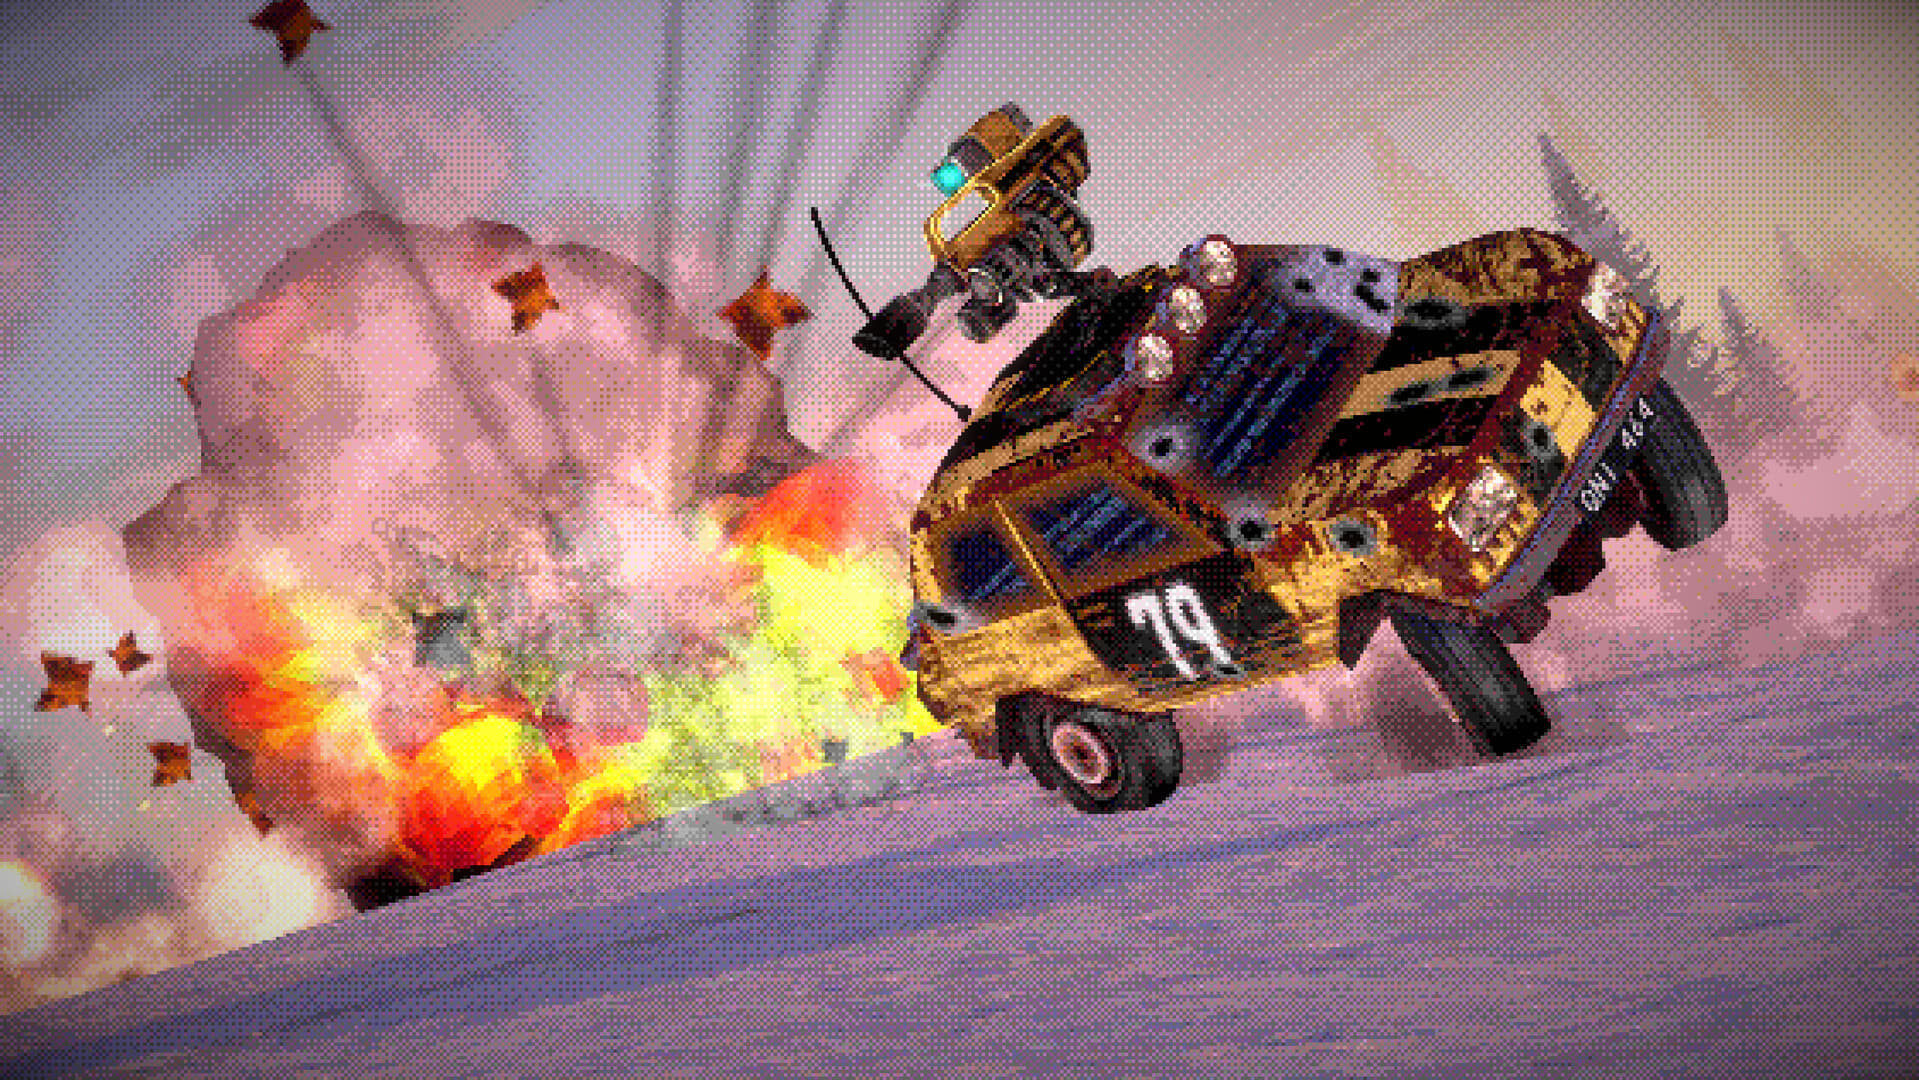 レトロな車に搭載した重火器をぶっ放して相手の車を破壊するゲーム『FUMES』の最新映像が公開_001